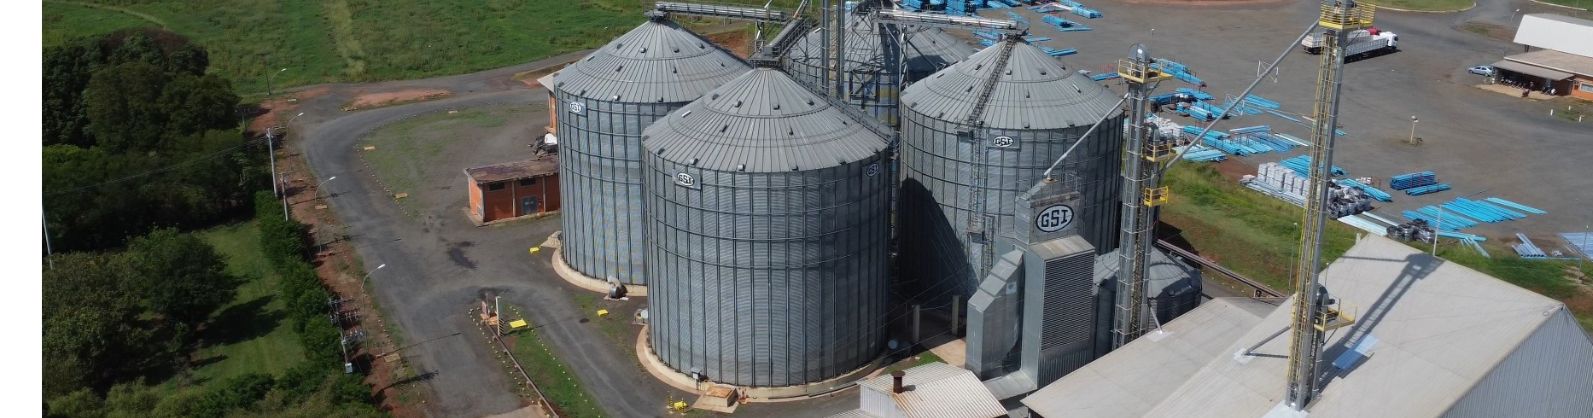 Diante do déficit de armazenagem, Coopercitrus oferece suporte completo para recebimento de grãos